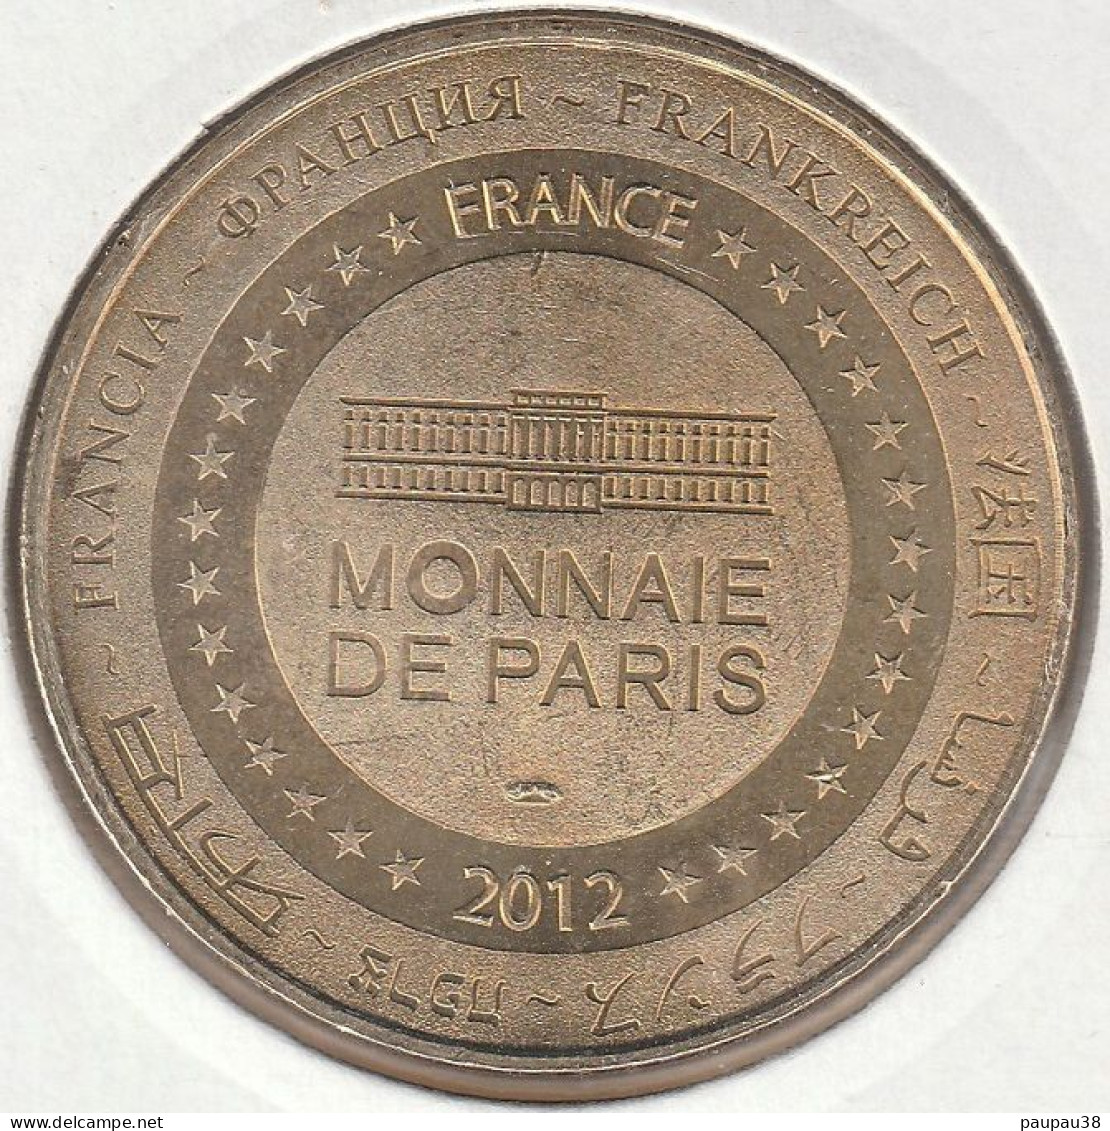 MONNAIE DE PARIS 2012 - 24 CASTELNAUD-LA-CHAPELLE Château Des Milandes - Ancienne Demeure De Joséphine Baker 2 Rapaces - 2012